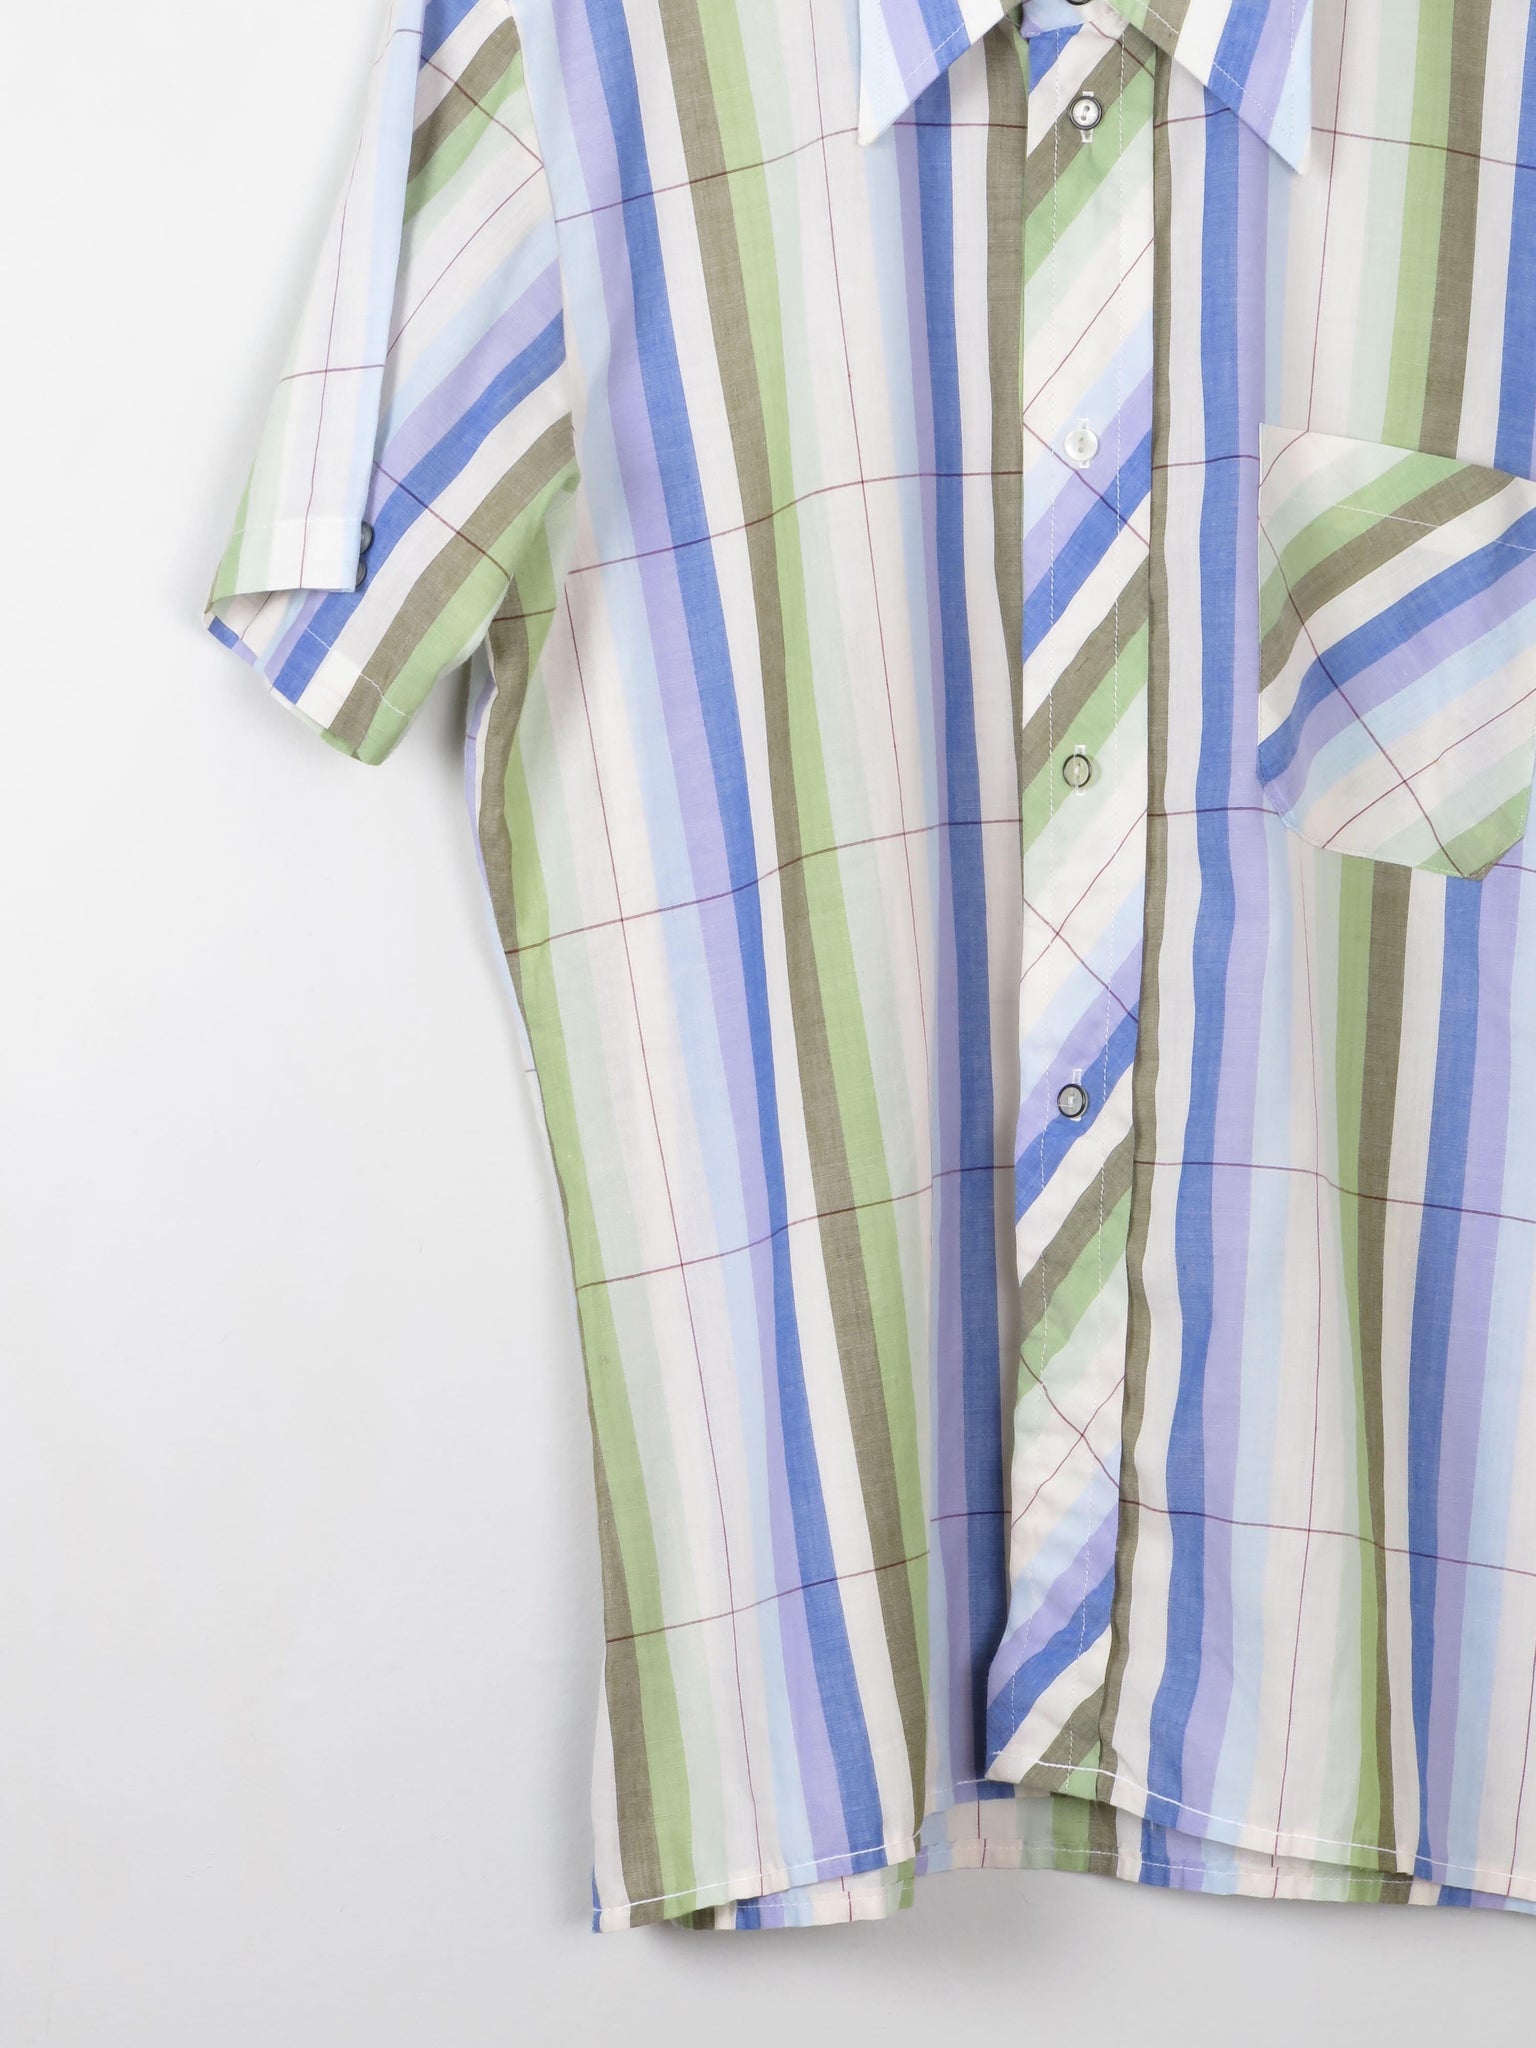 Men's Vintage Striped Shirt L - The Harlequin